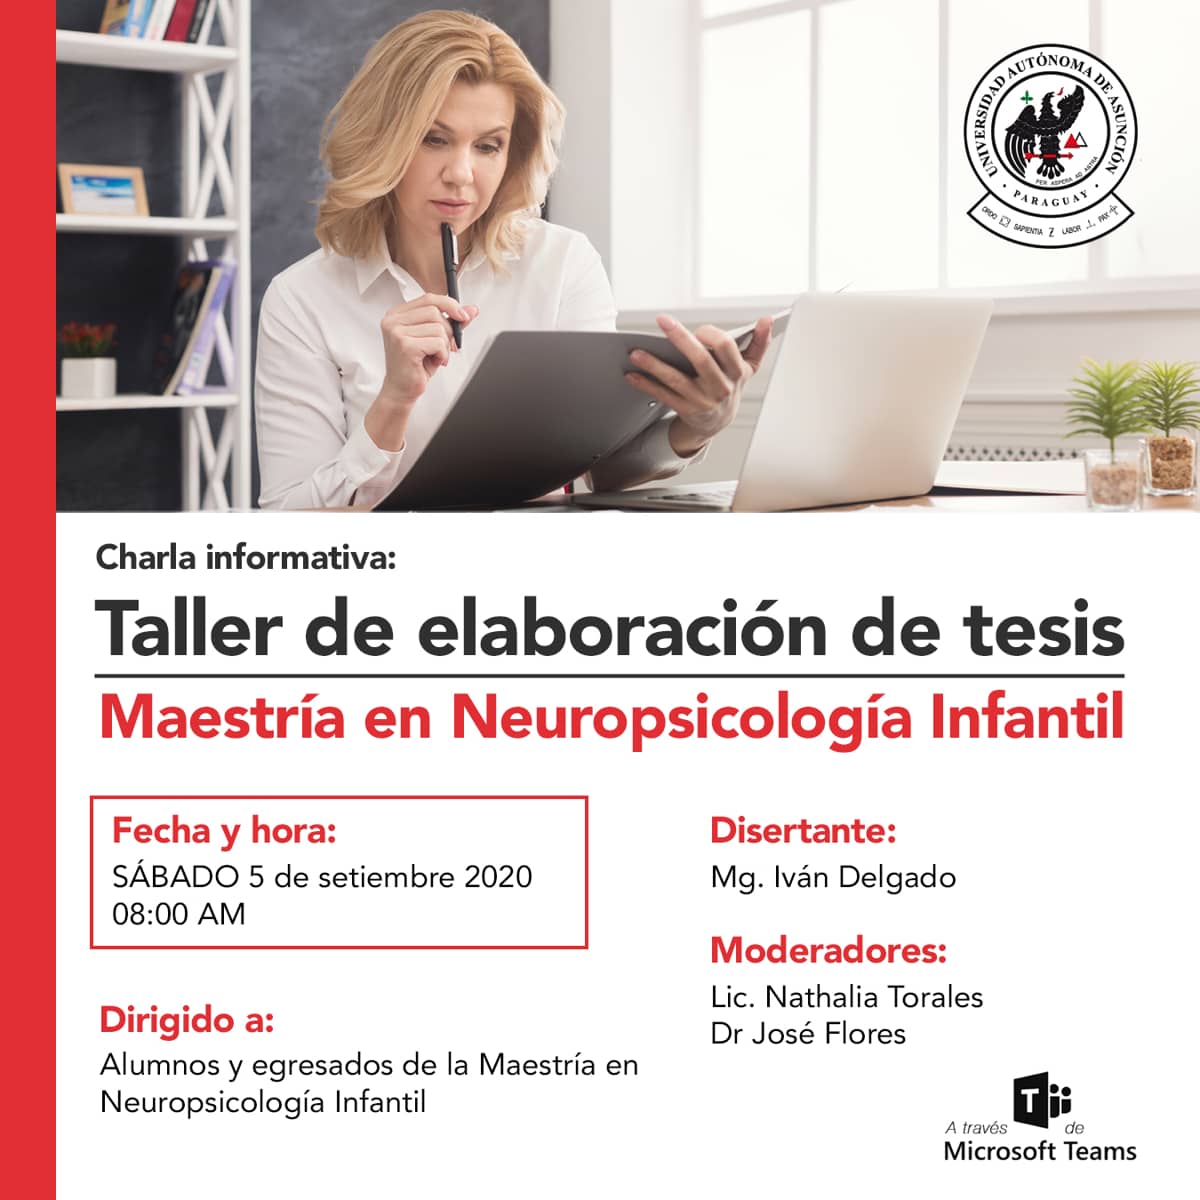 Charla informativa: Taller de elaboracion de Tesis de la Maestria en Neuropsicologia Infantil